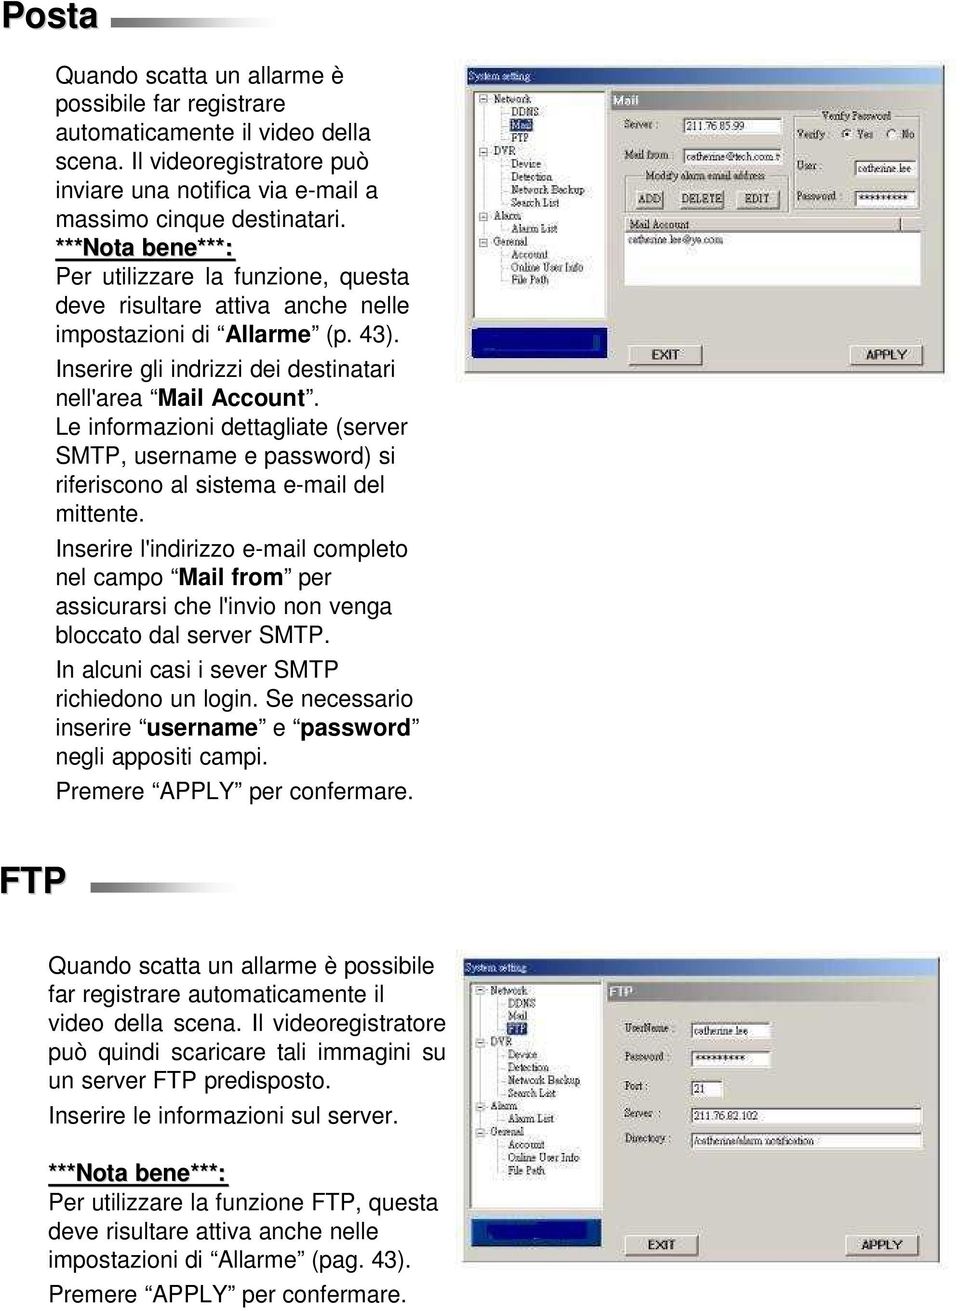 Le informazioni dettagliate (server SMTP, username e password) si riferiscono al sistema e-mail del mittente.